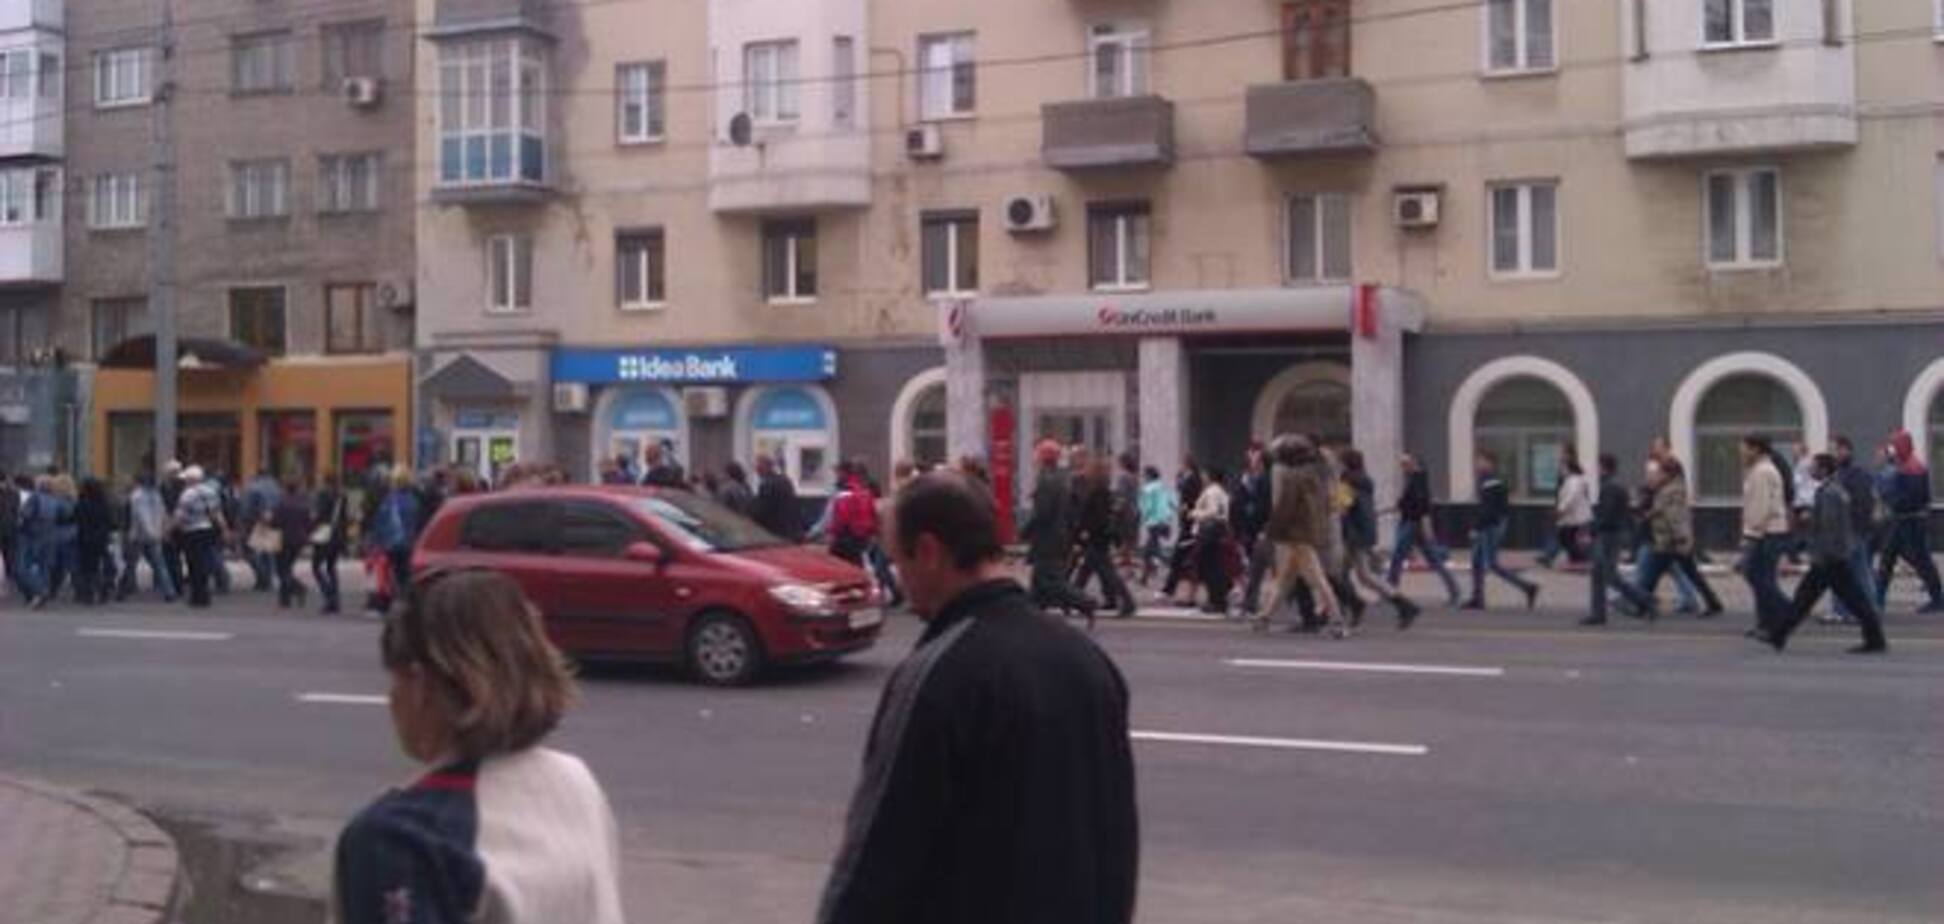 В Донецке сторонники террористов с нунчаками в руках штурмовали военную прокуратуру